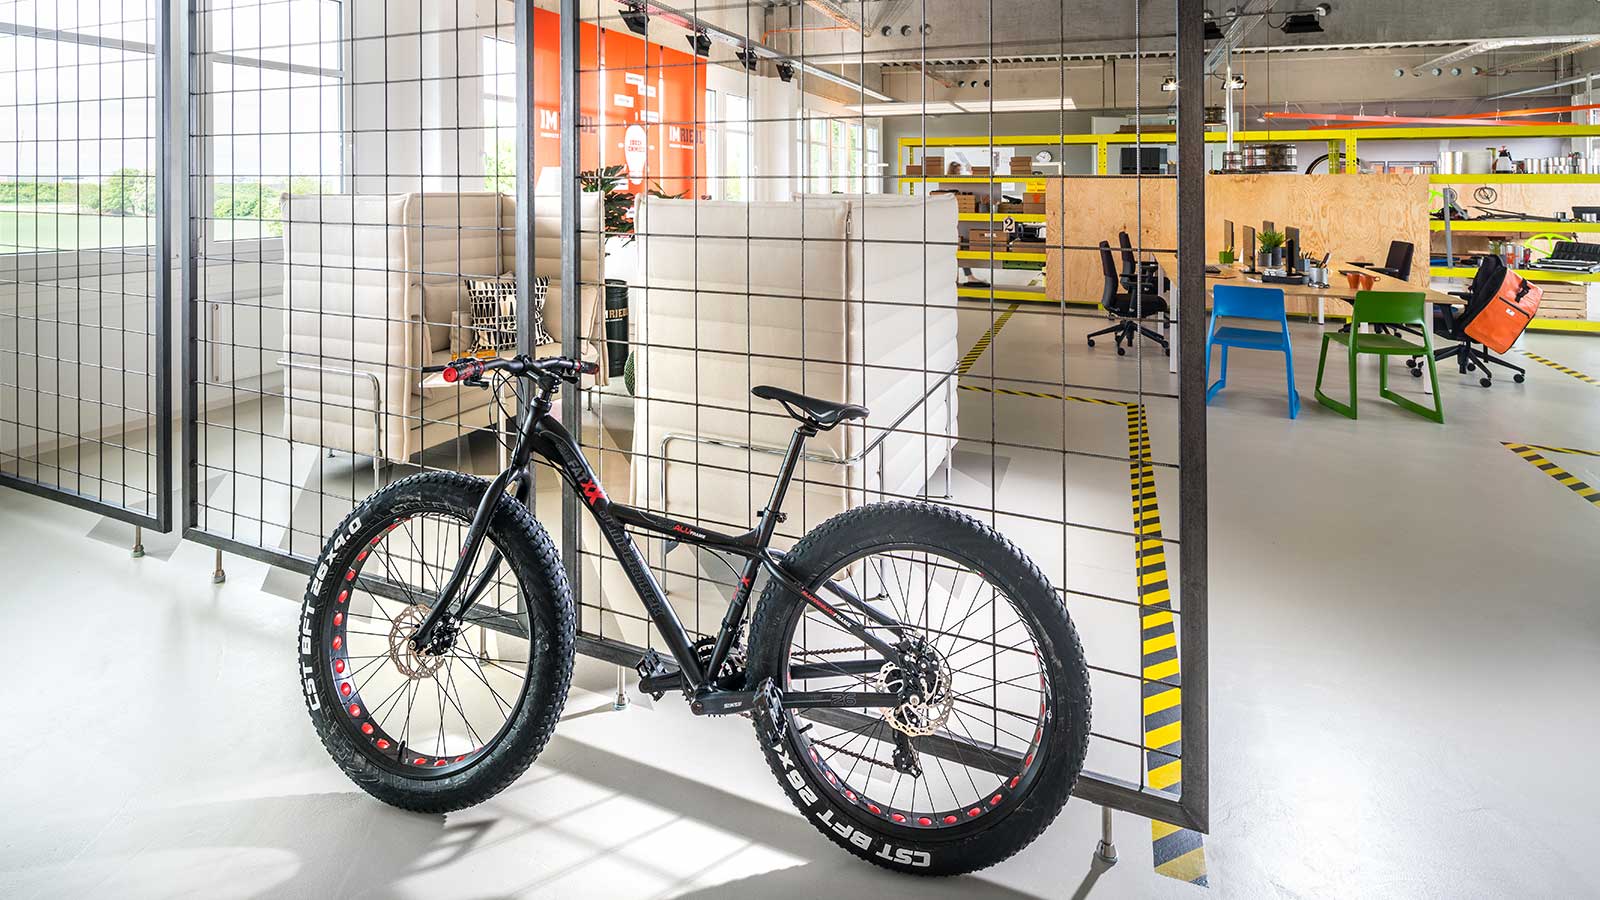 Im Riedl Innenansicht Großraumbüro Detail mit Fahrrad im Vordergrund